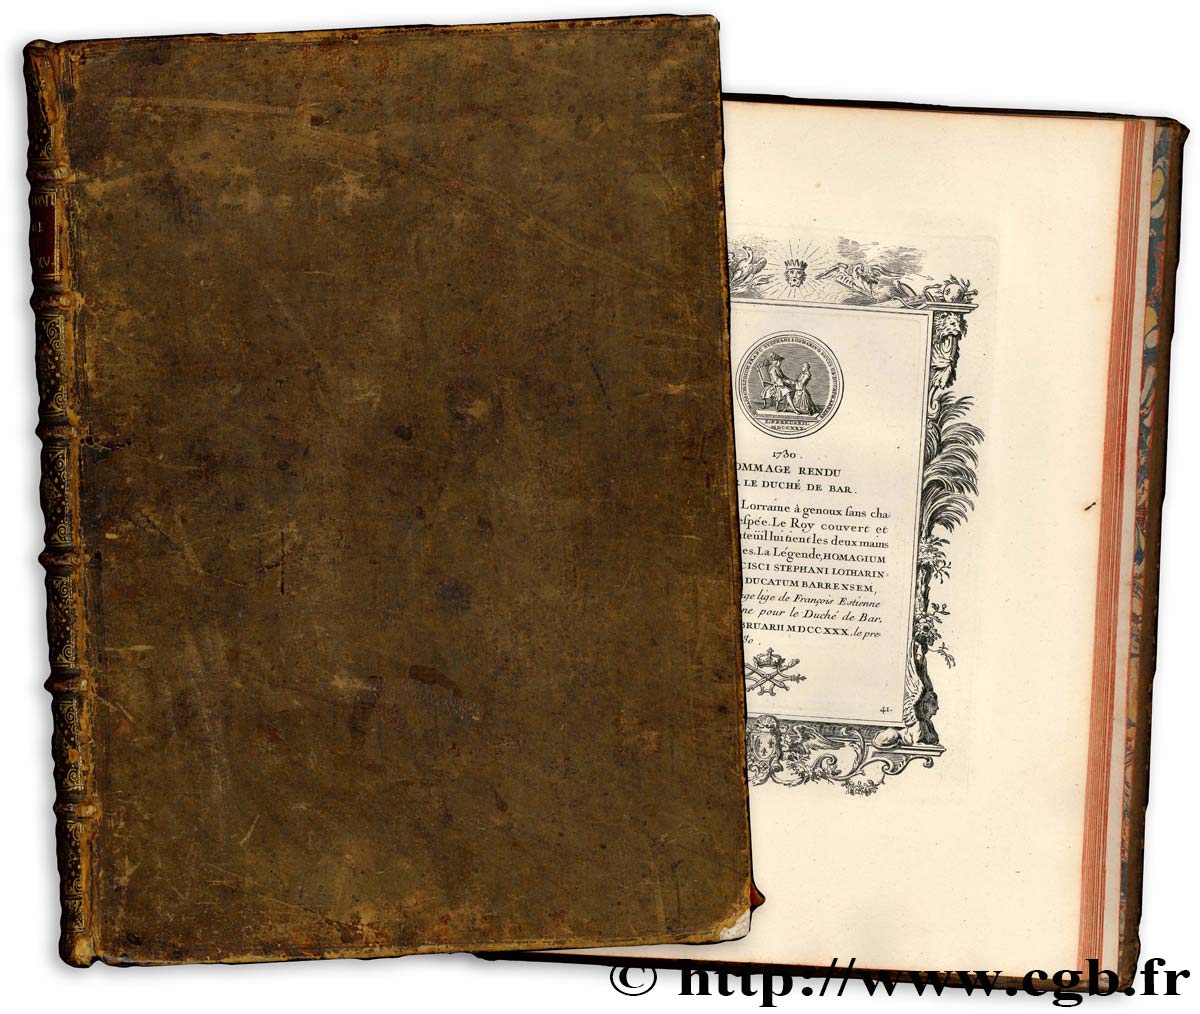 BOOKS - NUMISMATIC BIBLIOPHILISM Godonnesche (Nicolas) “Médailles du règne de Louis XV”. S.l.n.d. (c. 1736) n.d.  AU